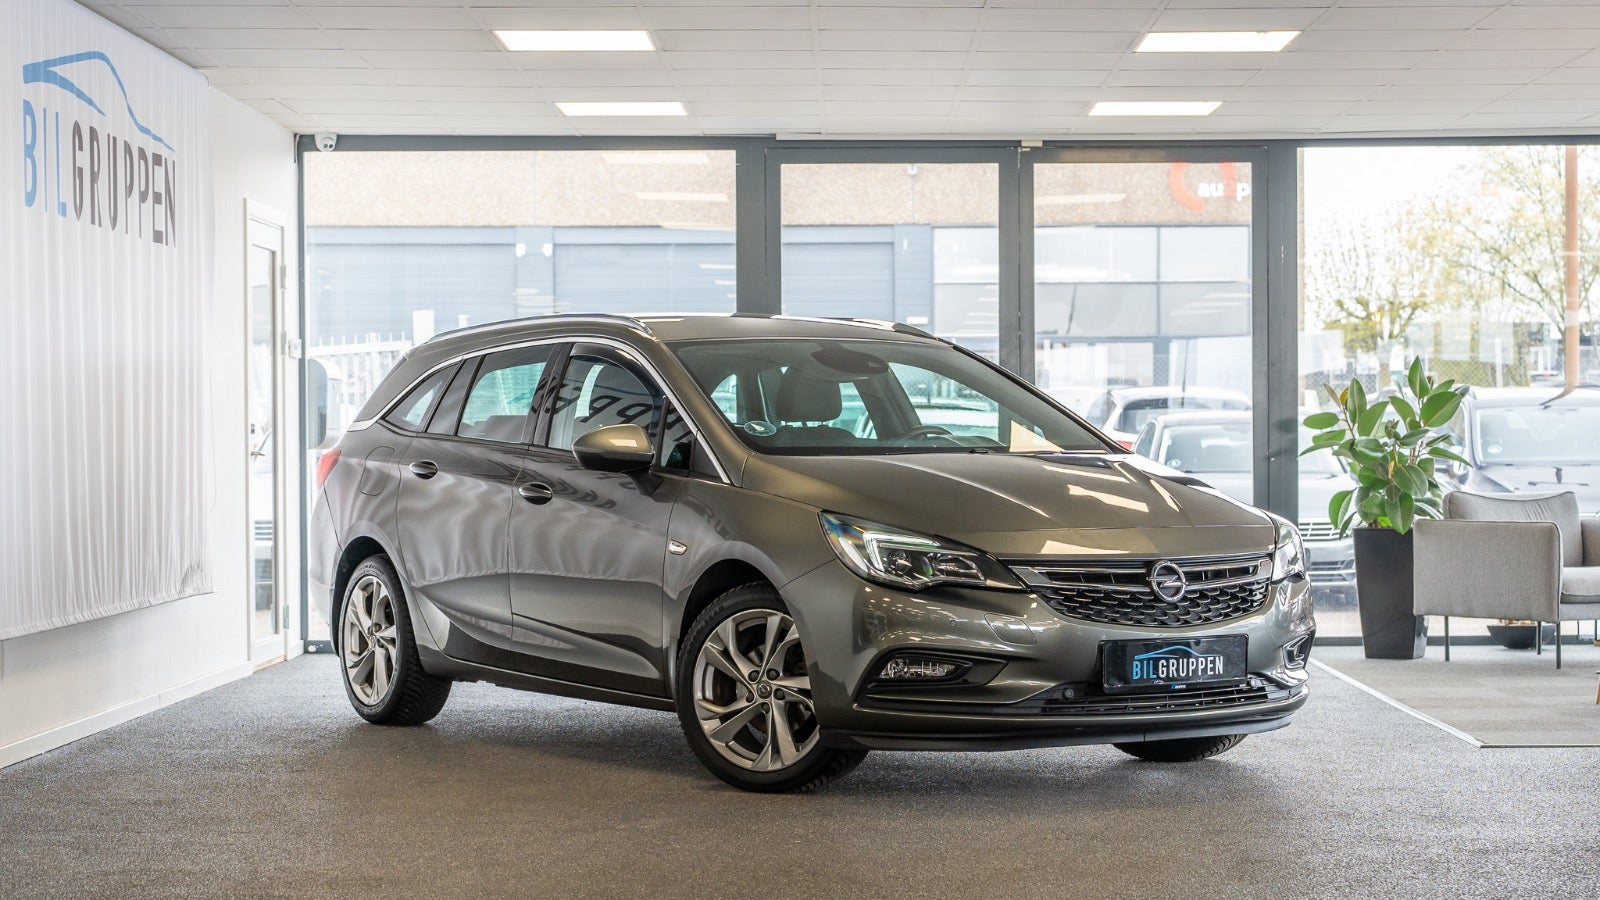 Billede af Opel Astra 1,4 T 150 Innovation Sports Tourer